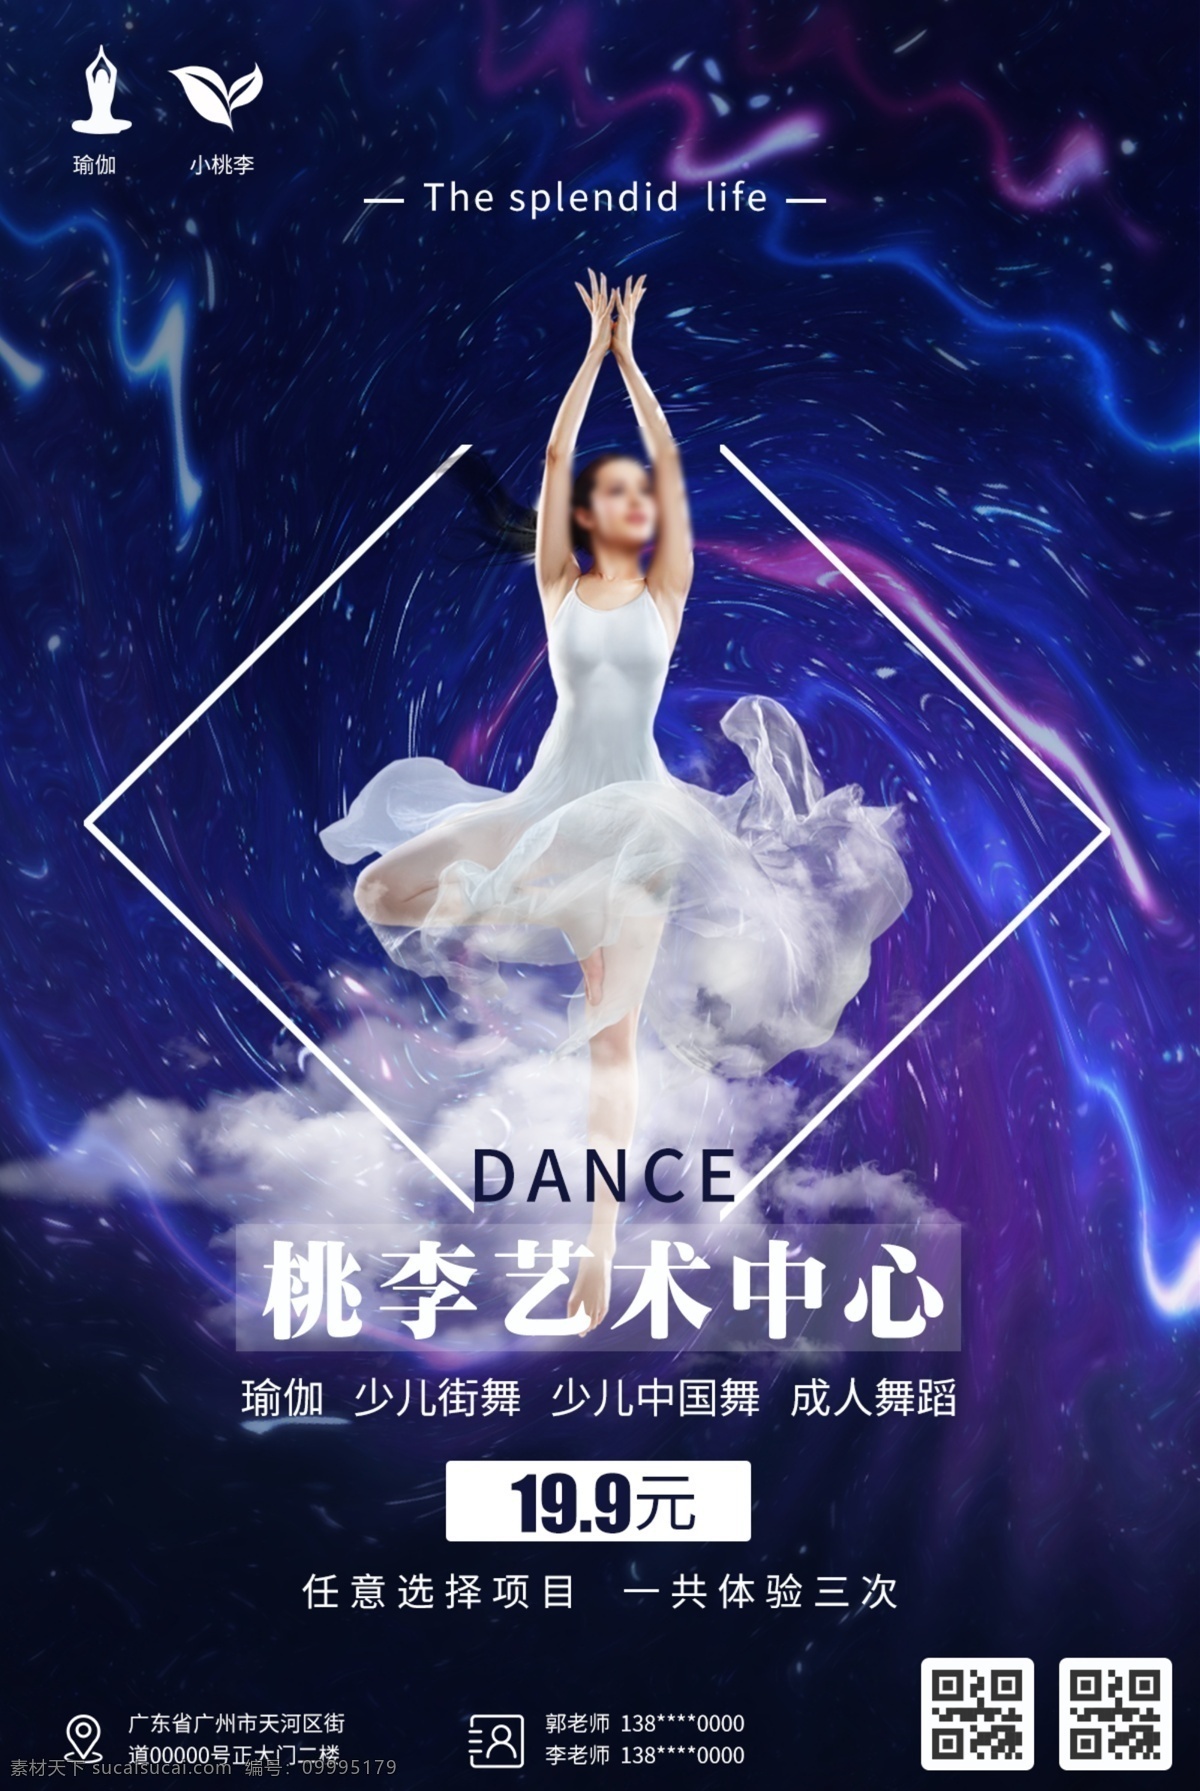 舞蹈 街舞 成人 少儿 中国舞 海报 艺术中心 成人舞蹈 少儿中国舞